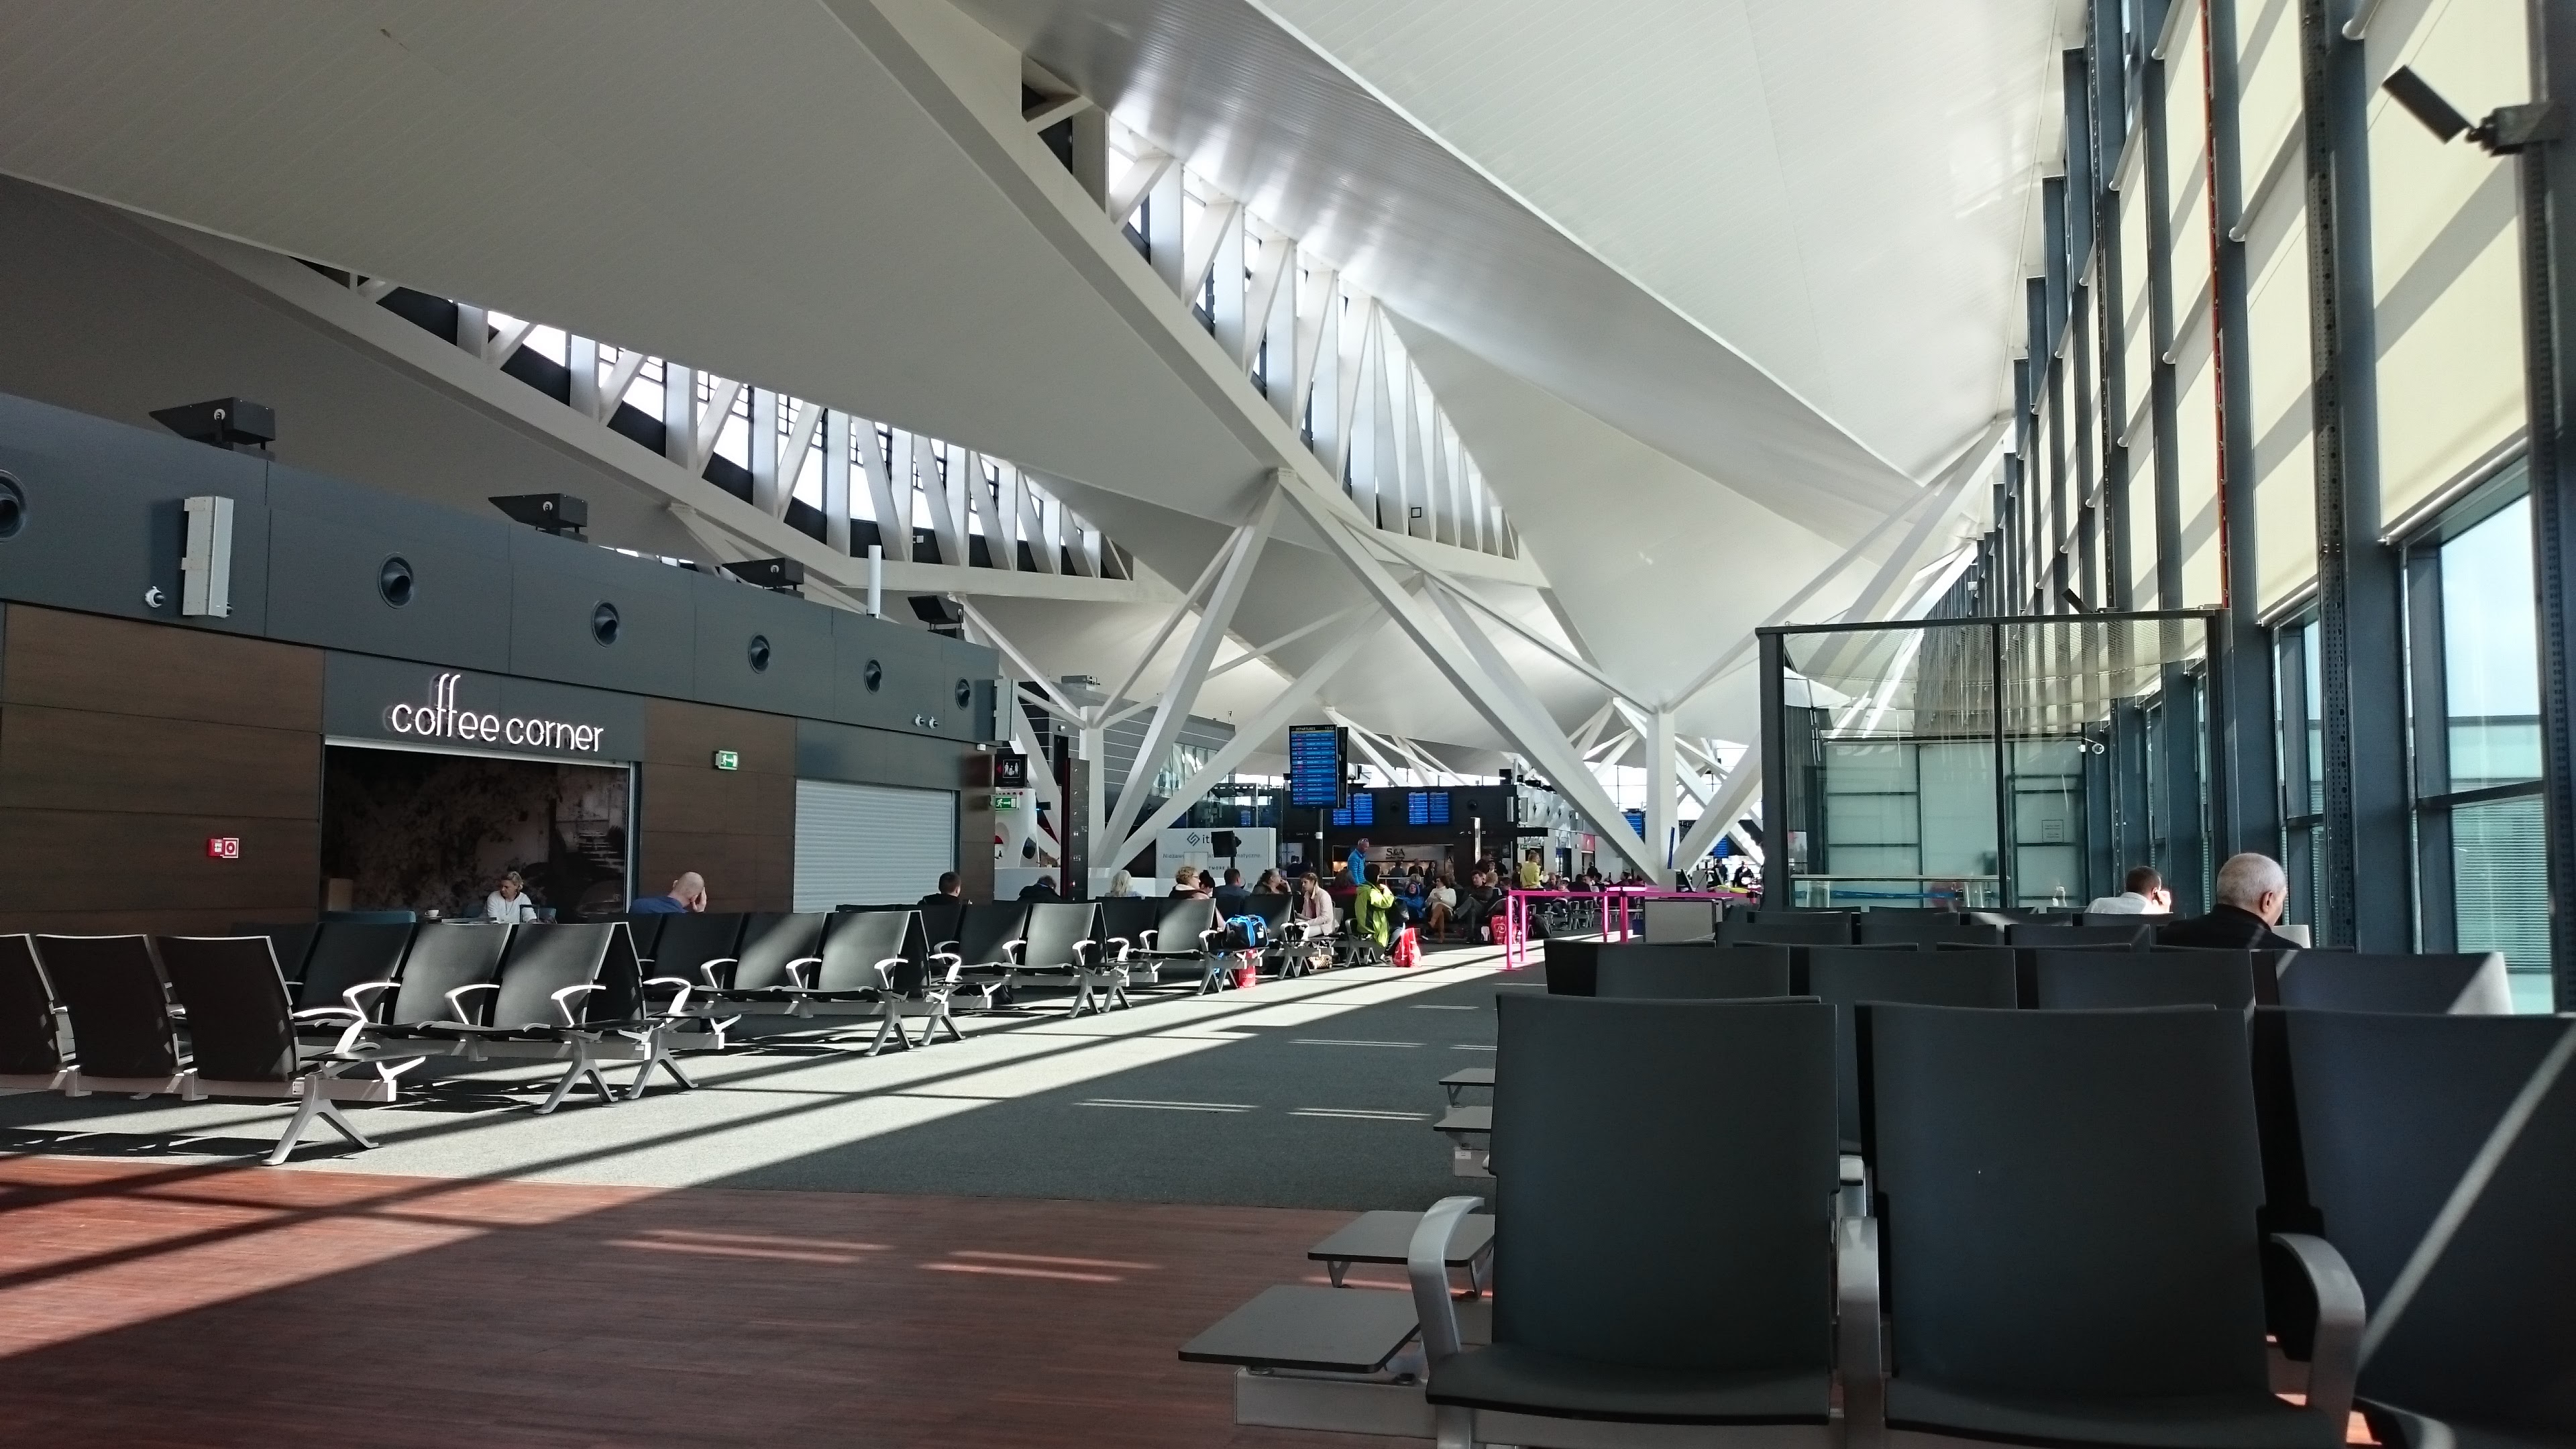 Гданьский аэропорт имени леха валенсы история а также инфраструктура аэропорта